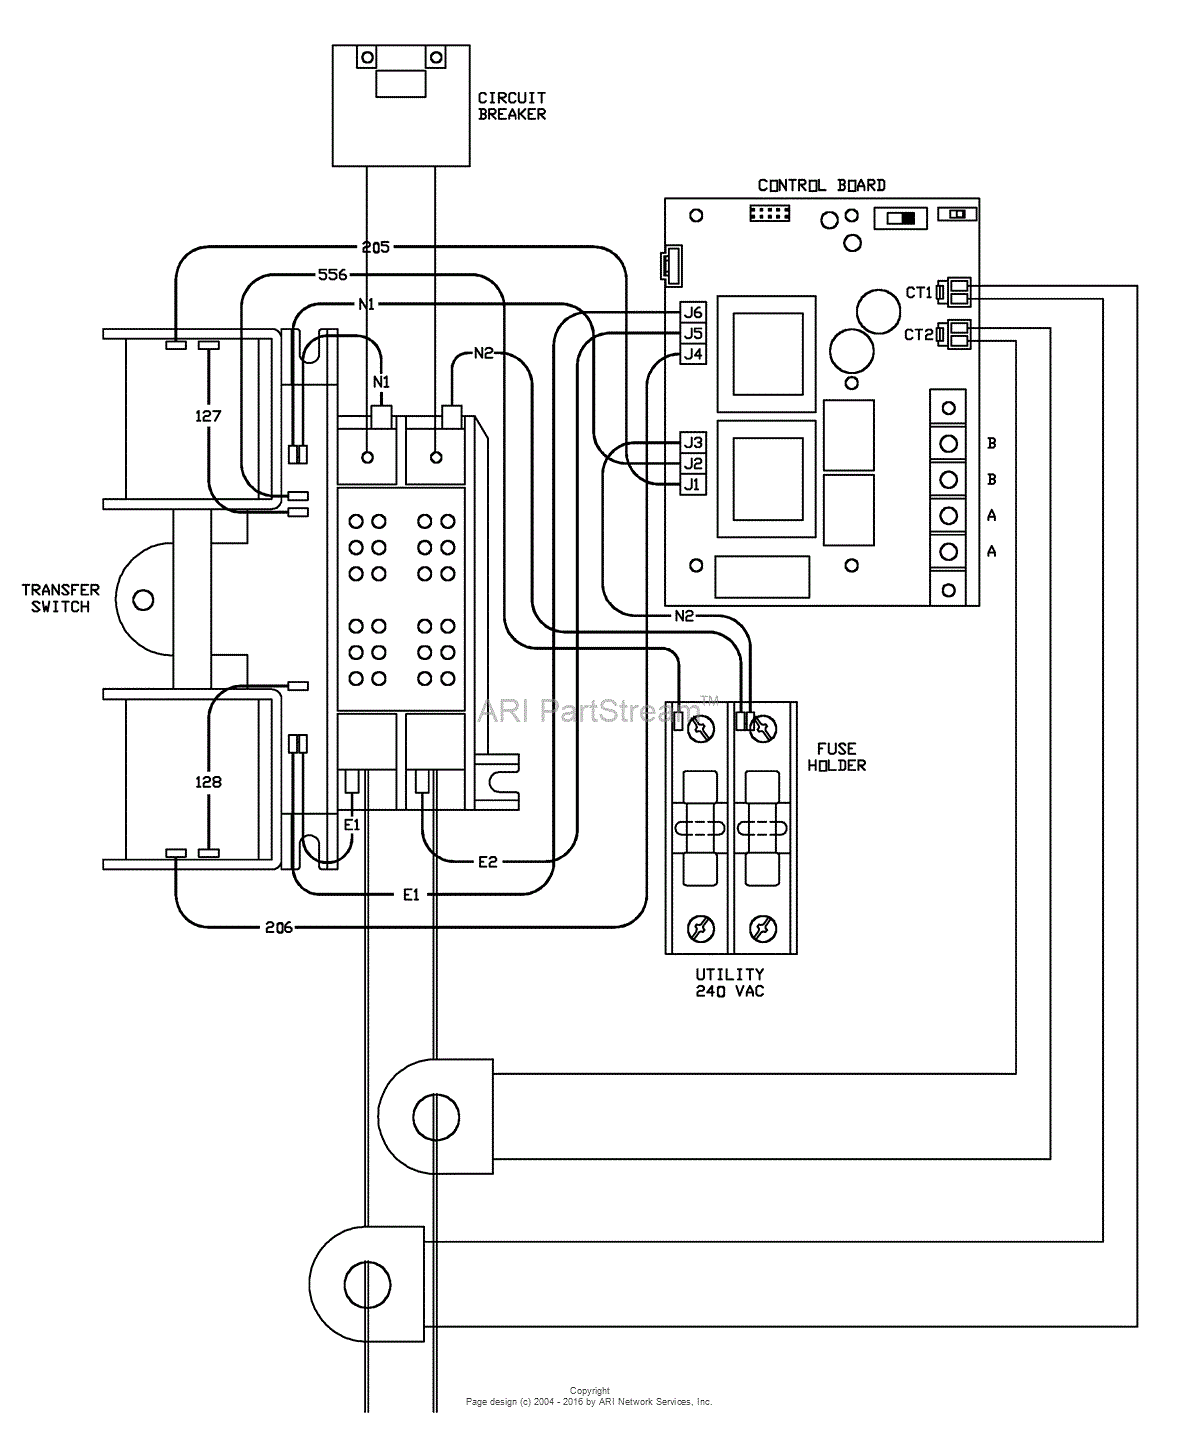 Generac Transfer Switch Wiring Diagram from az417944.vo.msecnd.net